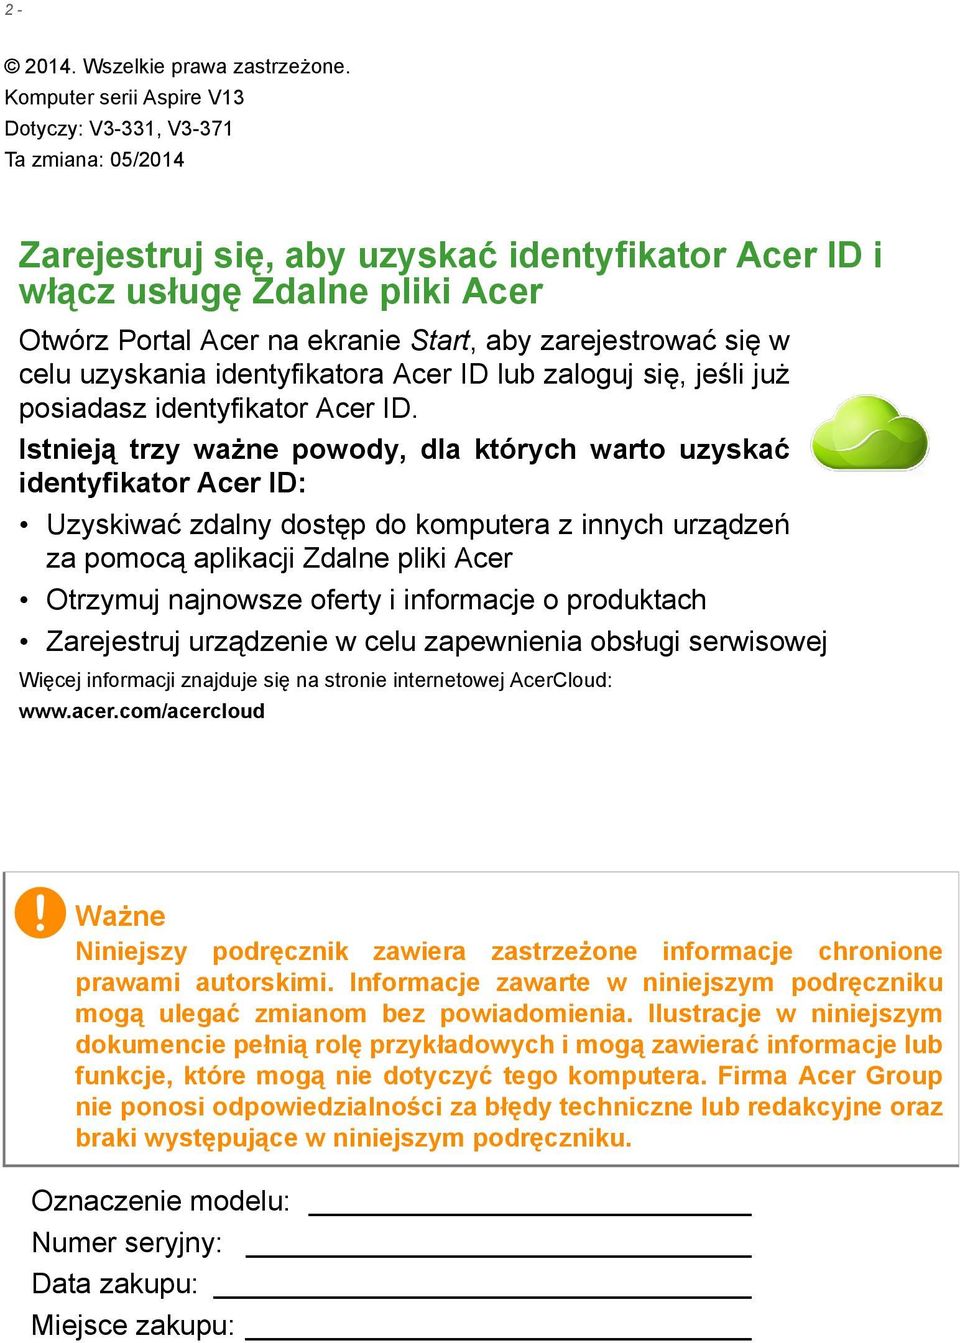 zarejestrować się w celu uzyskania identyfikatora Acer ID lub zaloguj się, jeśli już posiadasz identyfikator Acer ID.